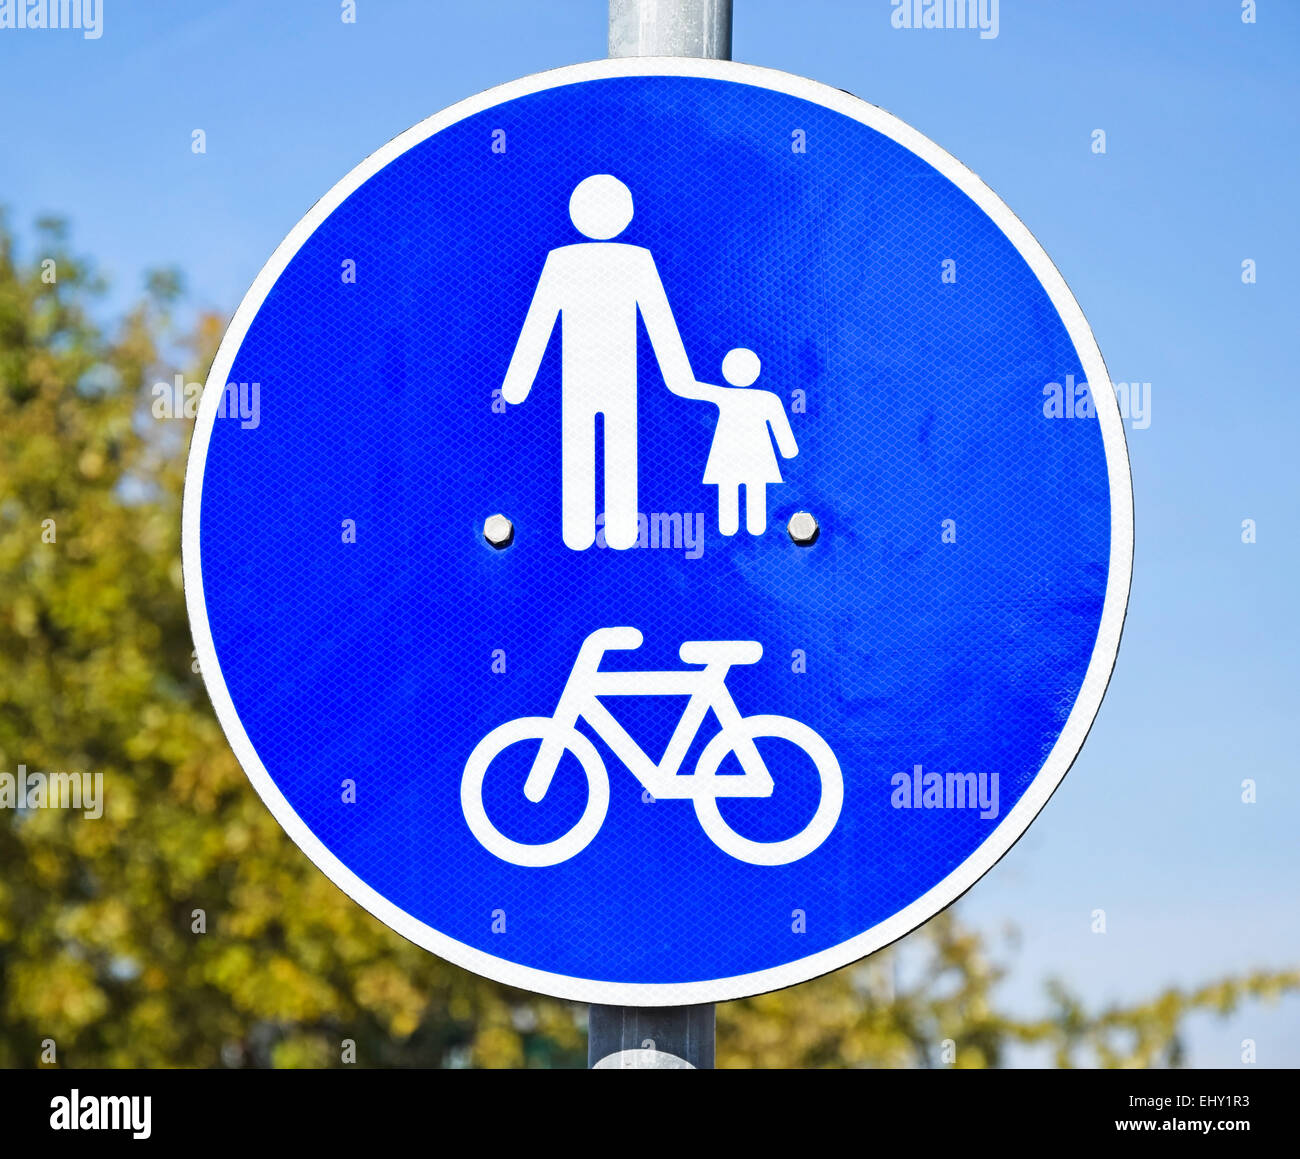 Stoppschild und Verkehrszeichen Radfahrer kreuzen - ein